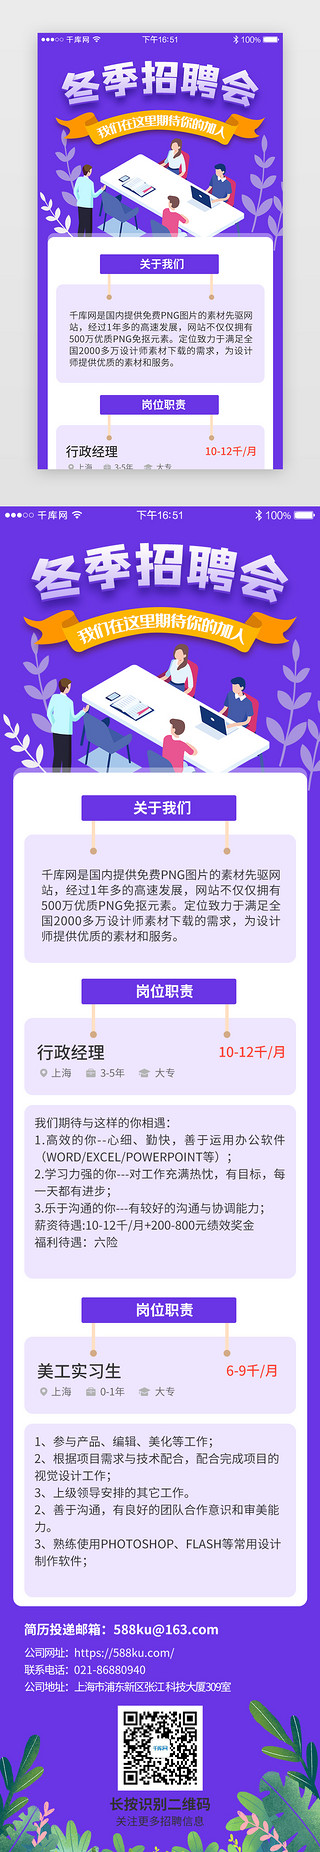 紫色系app招聘求职H5